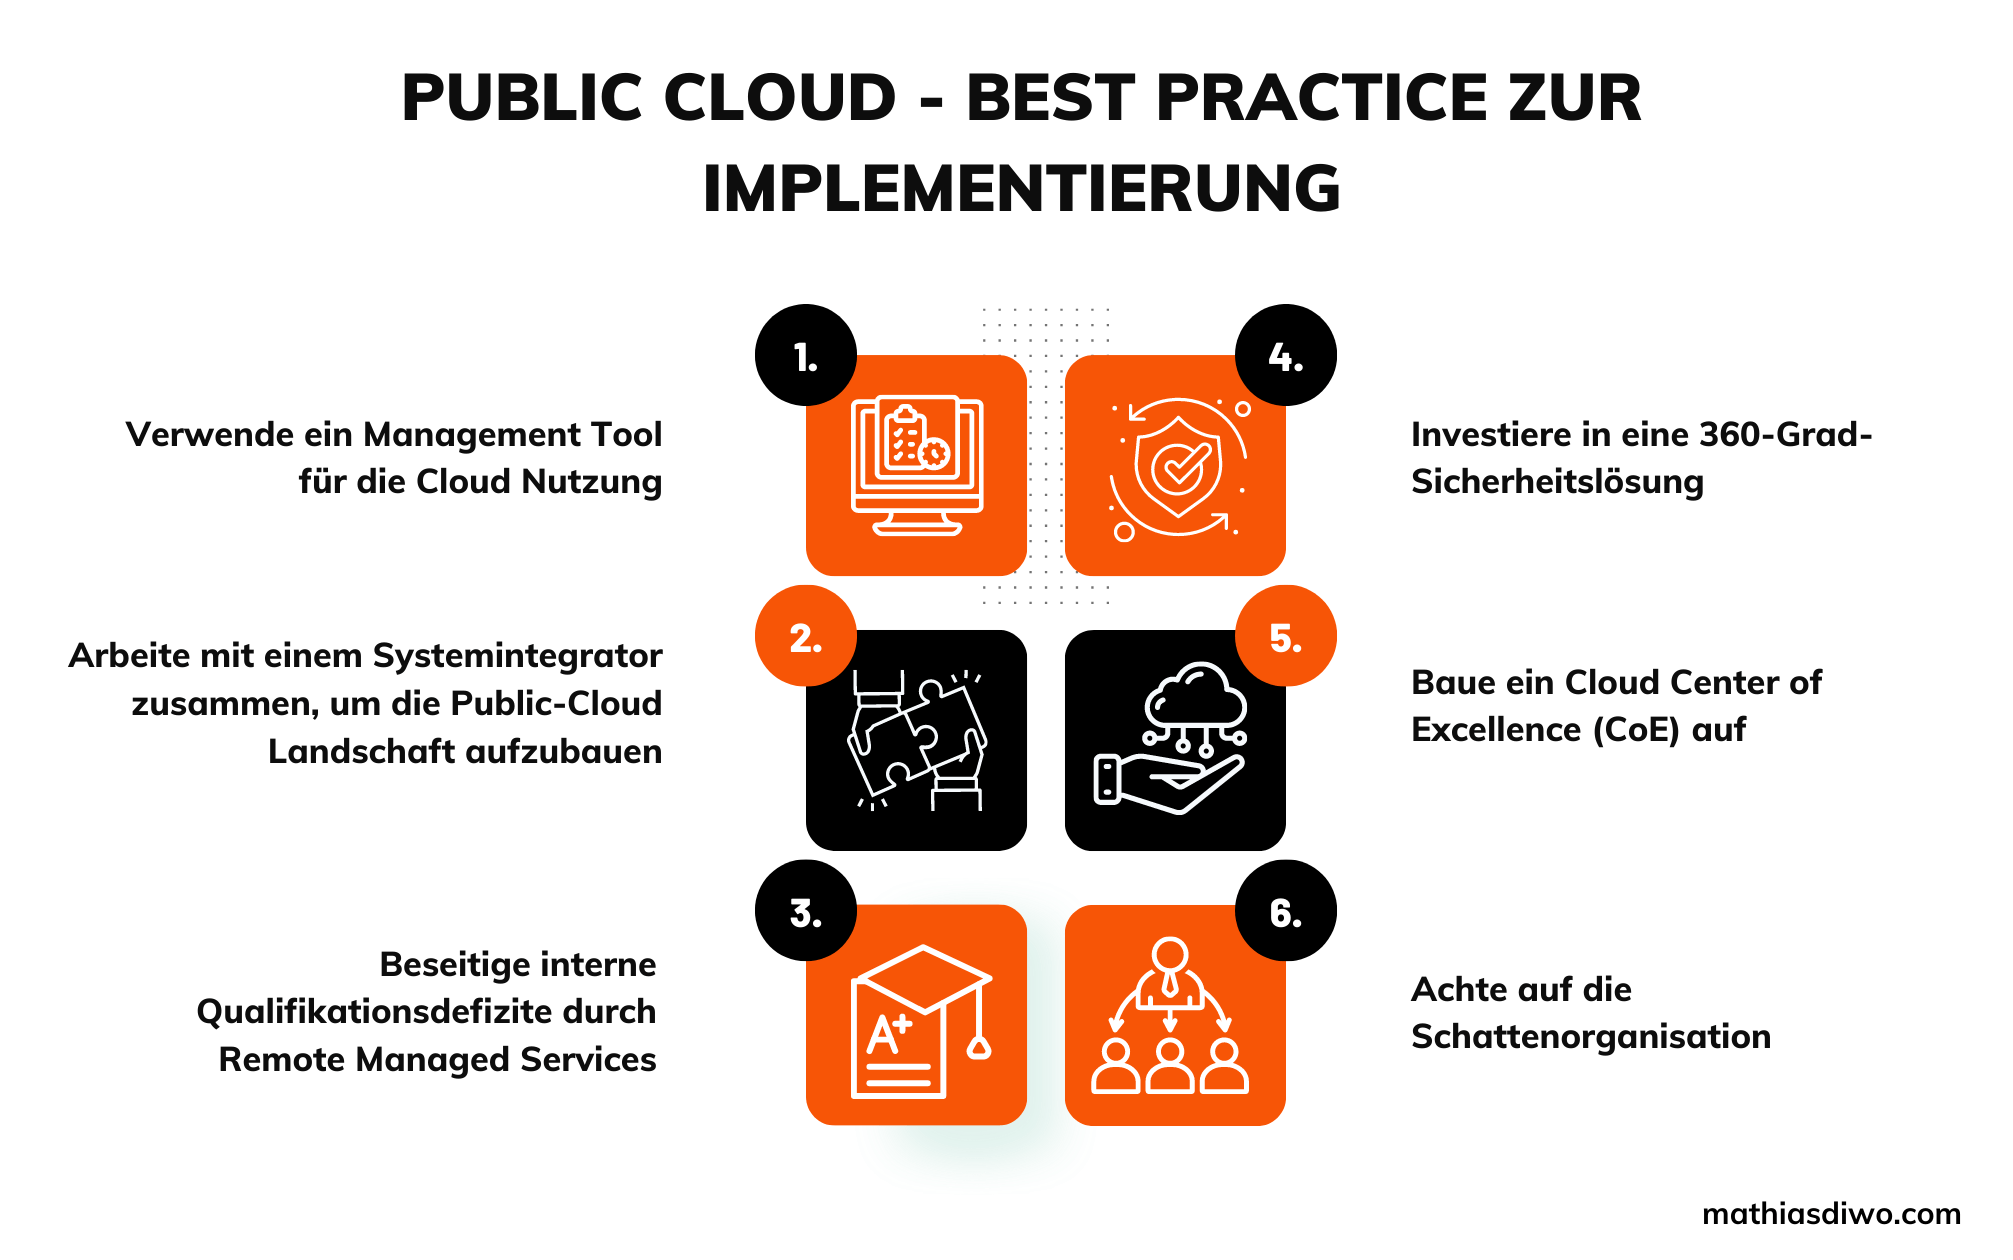 Public Cloud - Best Practice zur Implementierung